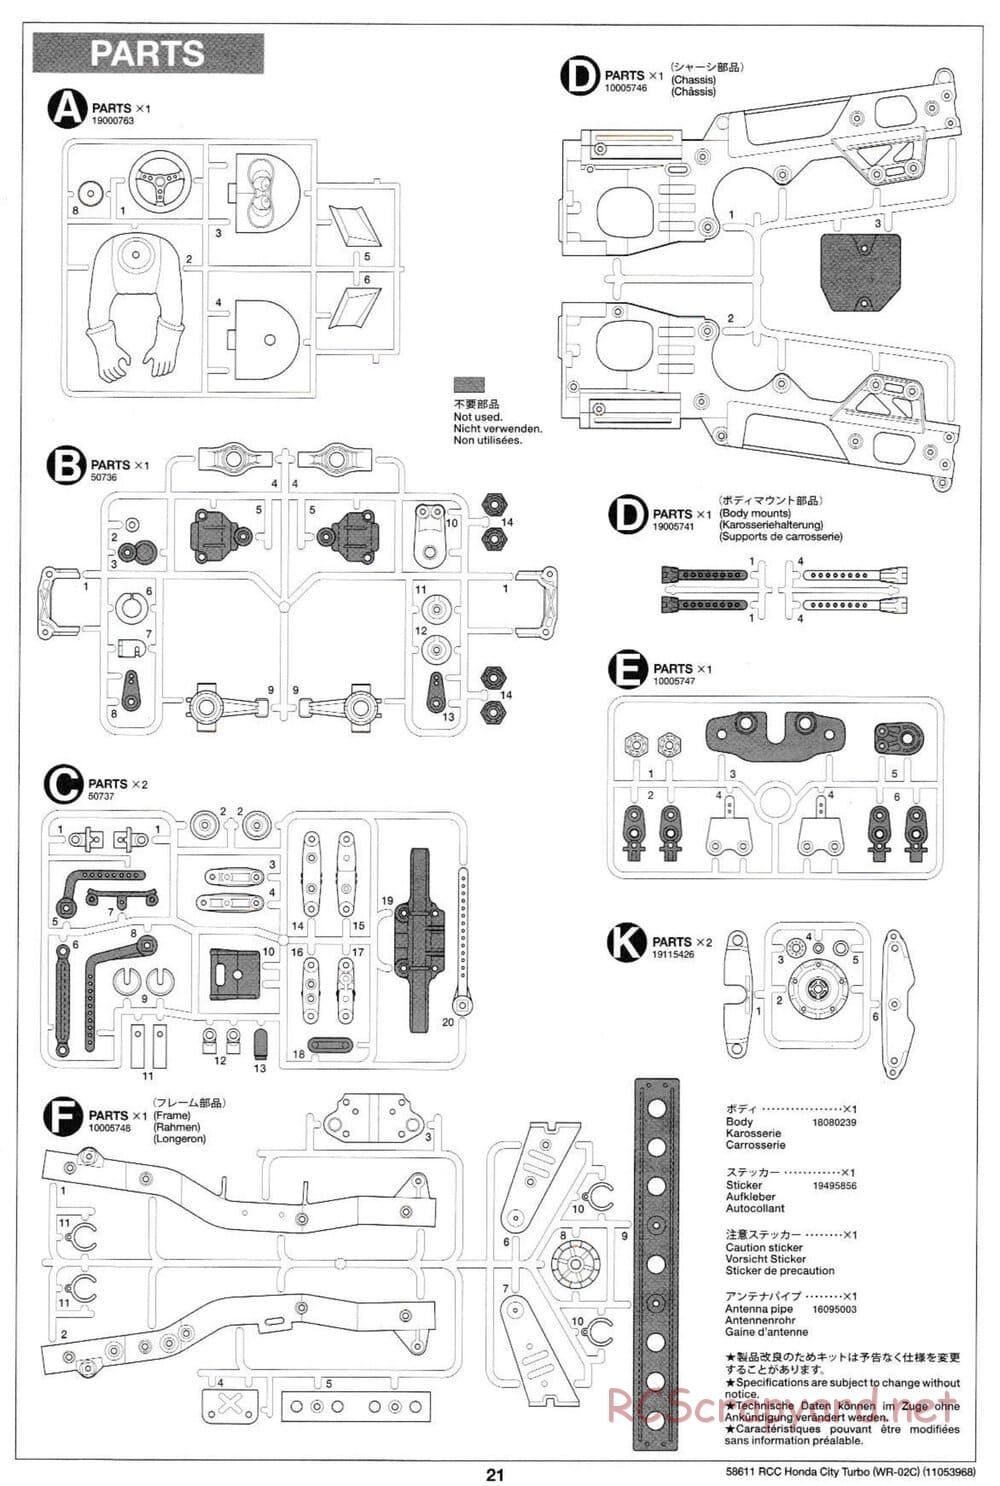 Tamiya - Honda City Turbo - WR-02C Chassis - Manual - Page 21